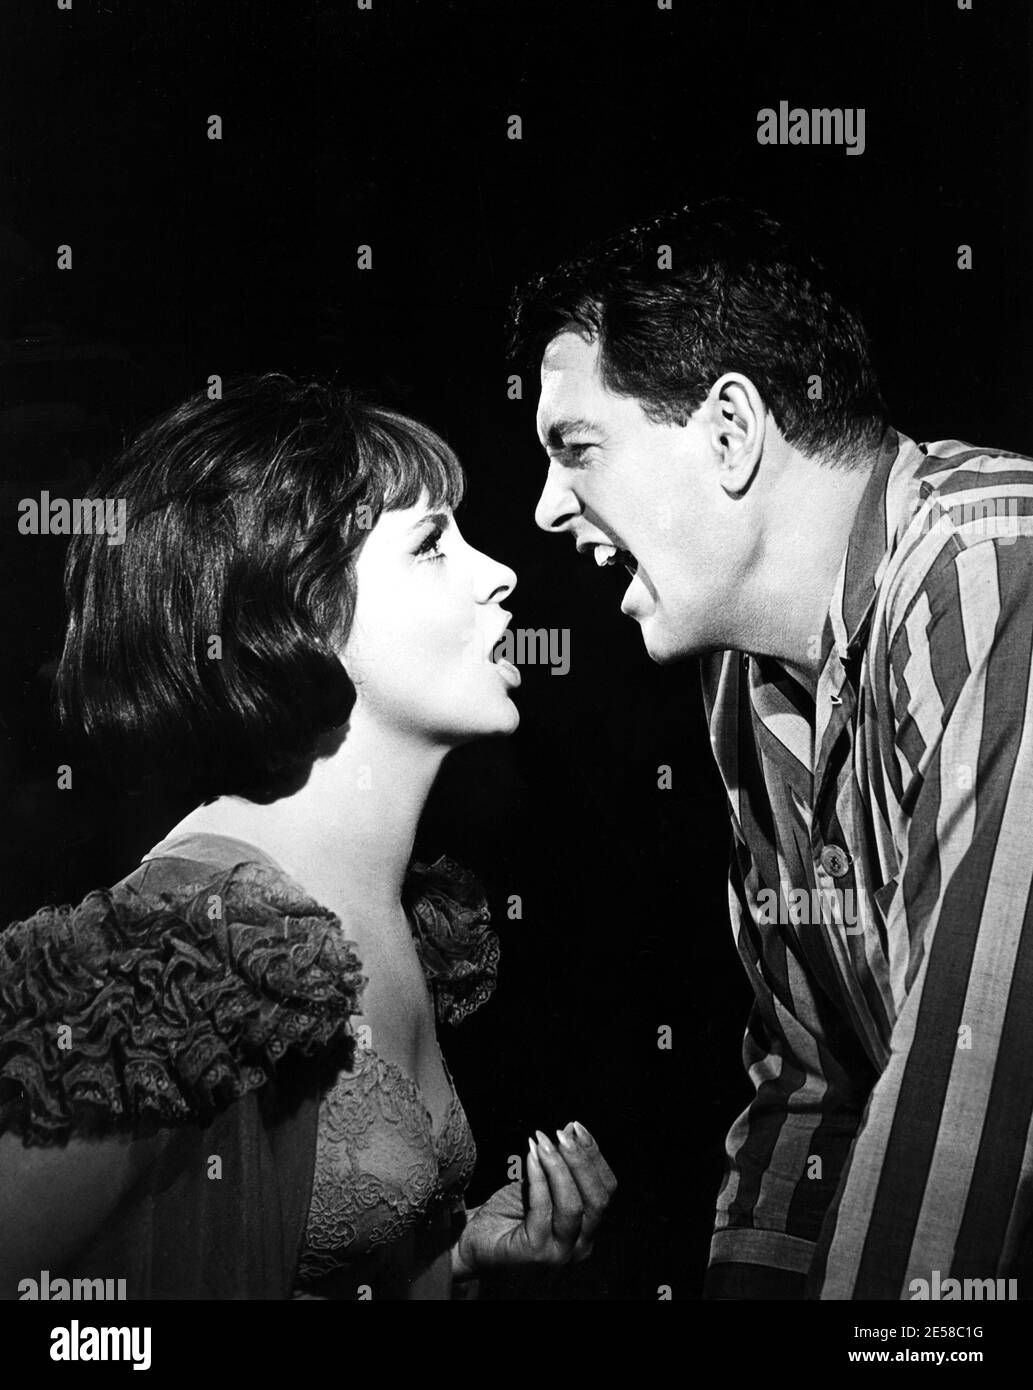 1964 , USA : The italian movie actress GINA LOLLOBRIGIDA with ROCK HUDSON in STRANGE BEDFELLOWS ( Strani compagni di letto ) by Melvin Frank , Universal Studio stills photo - CINEMA - FILM - innamorati che litigano urlano - litigio - trouble - troubles - grido - grida - urlo - urli - urla - cry shout - yell - shriek - shrieks - scream - screams - lovers - love scene - scena d' amore - profilo - profile ----  Archivio GBB Stock Photo